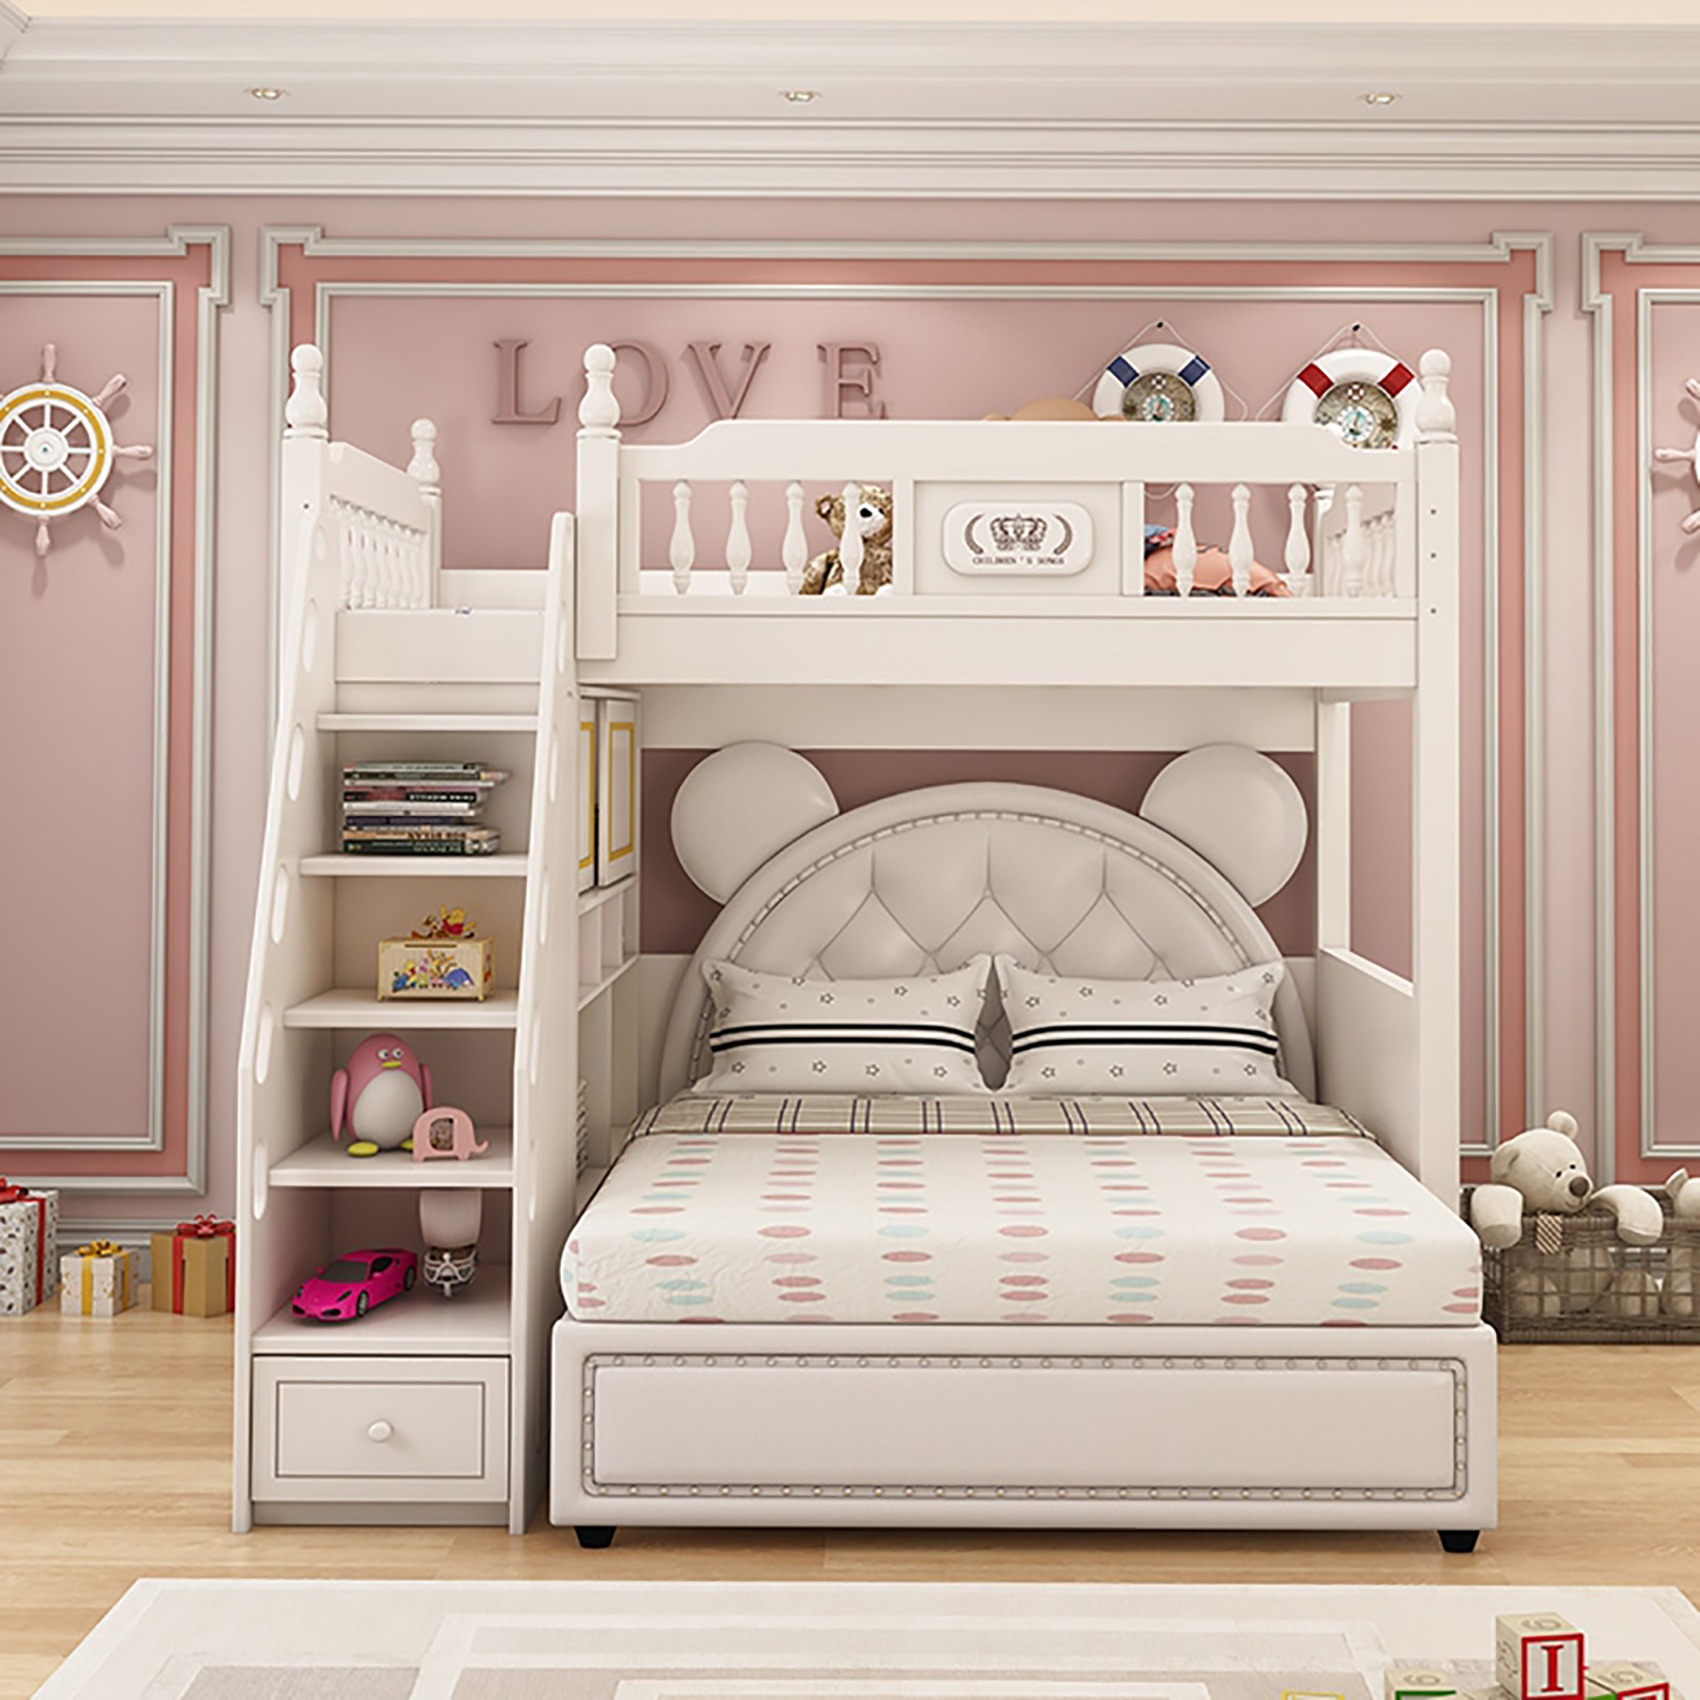 儿童房可这样装修智能家 设计师说: 这个子母床太值得拥有了粉嫩嫩的